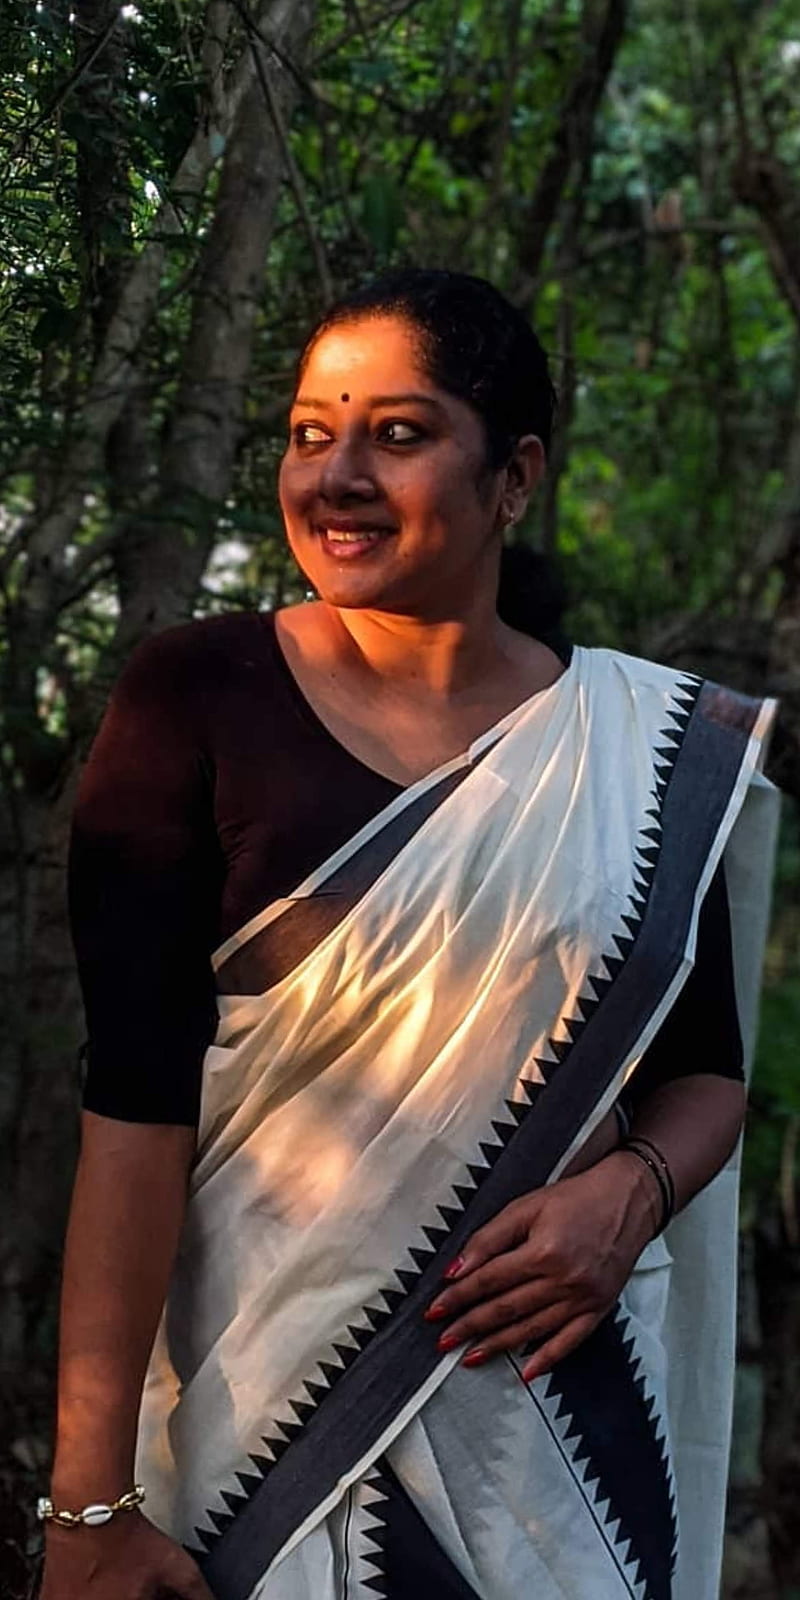 Anumol Actress Kerala